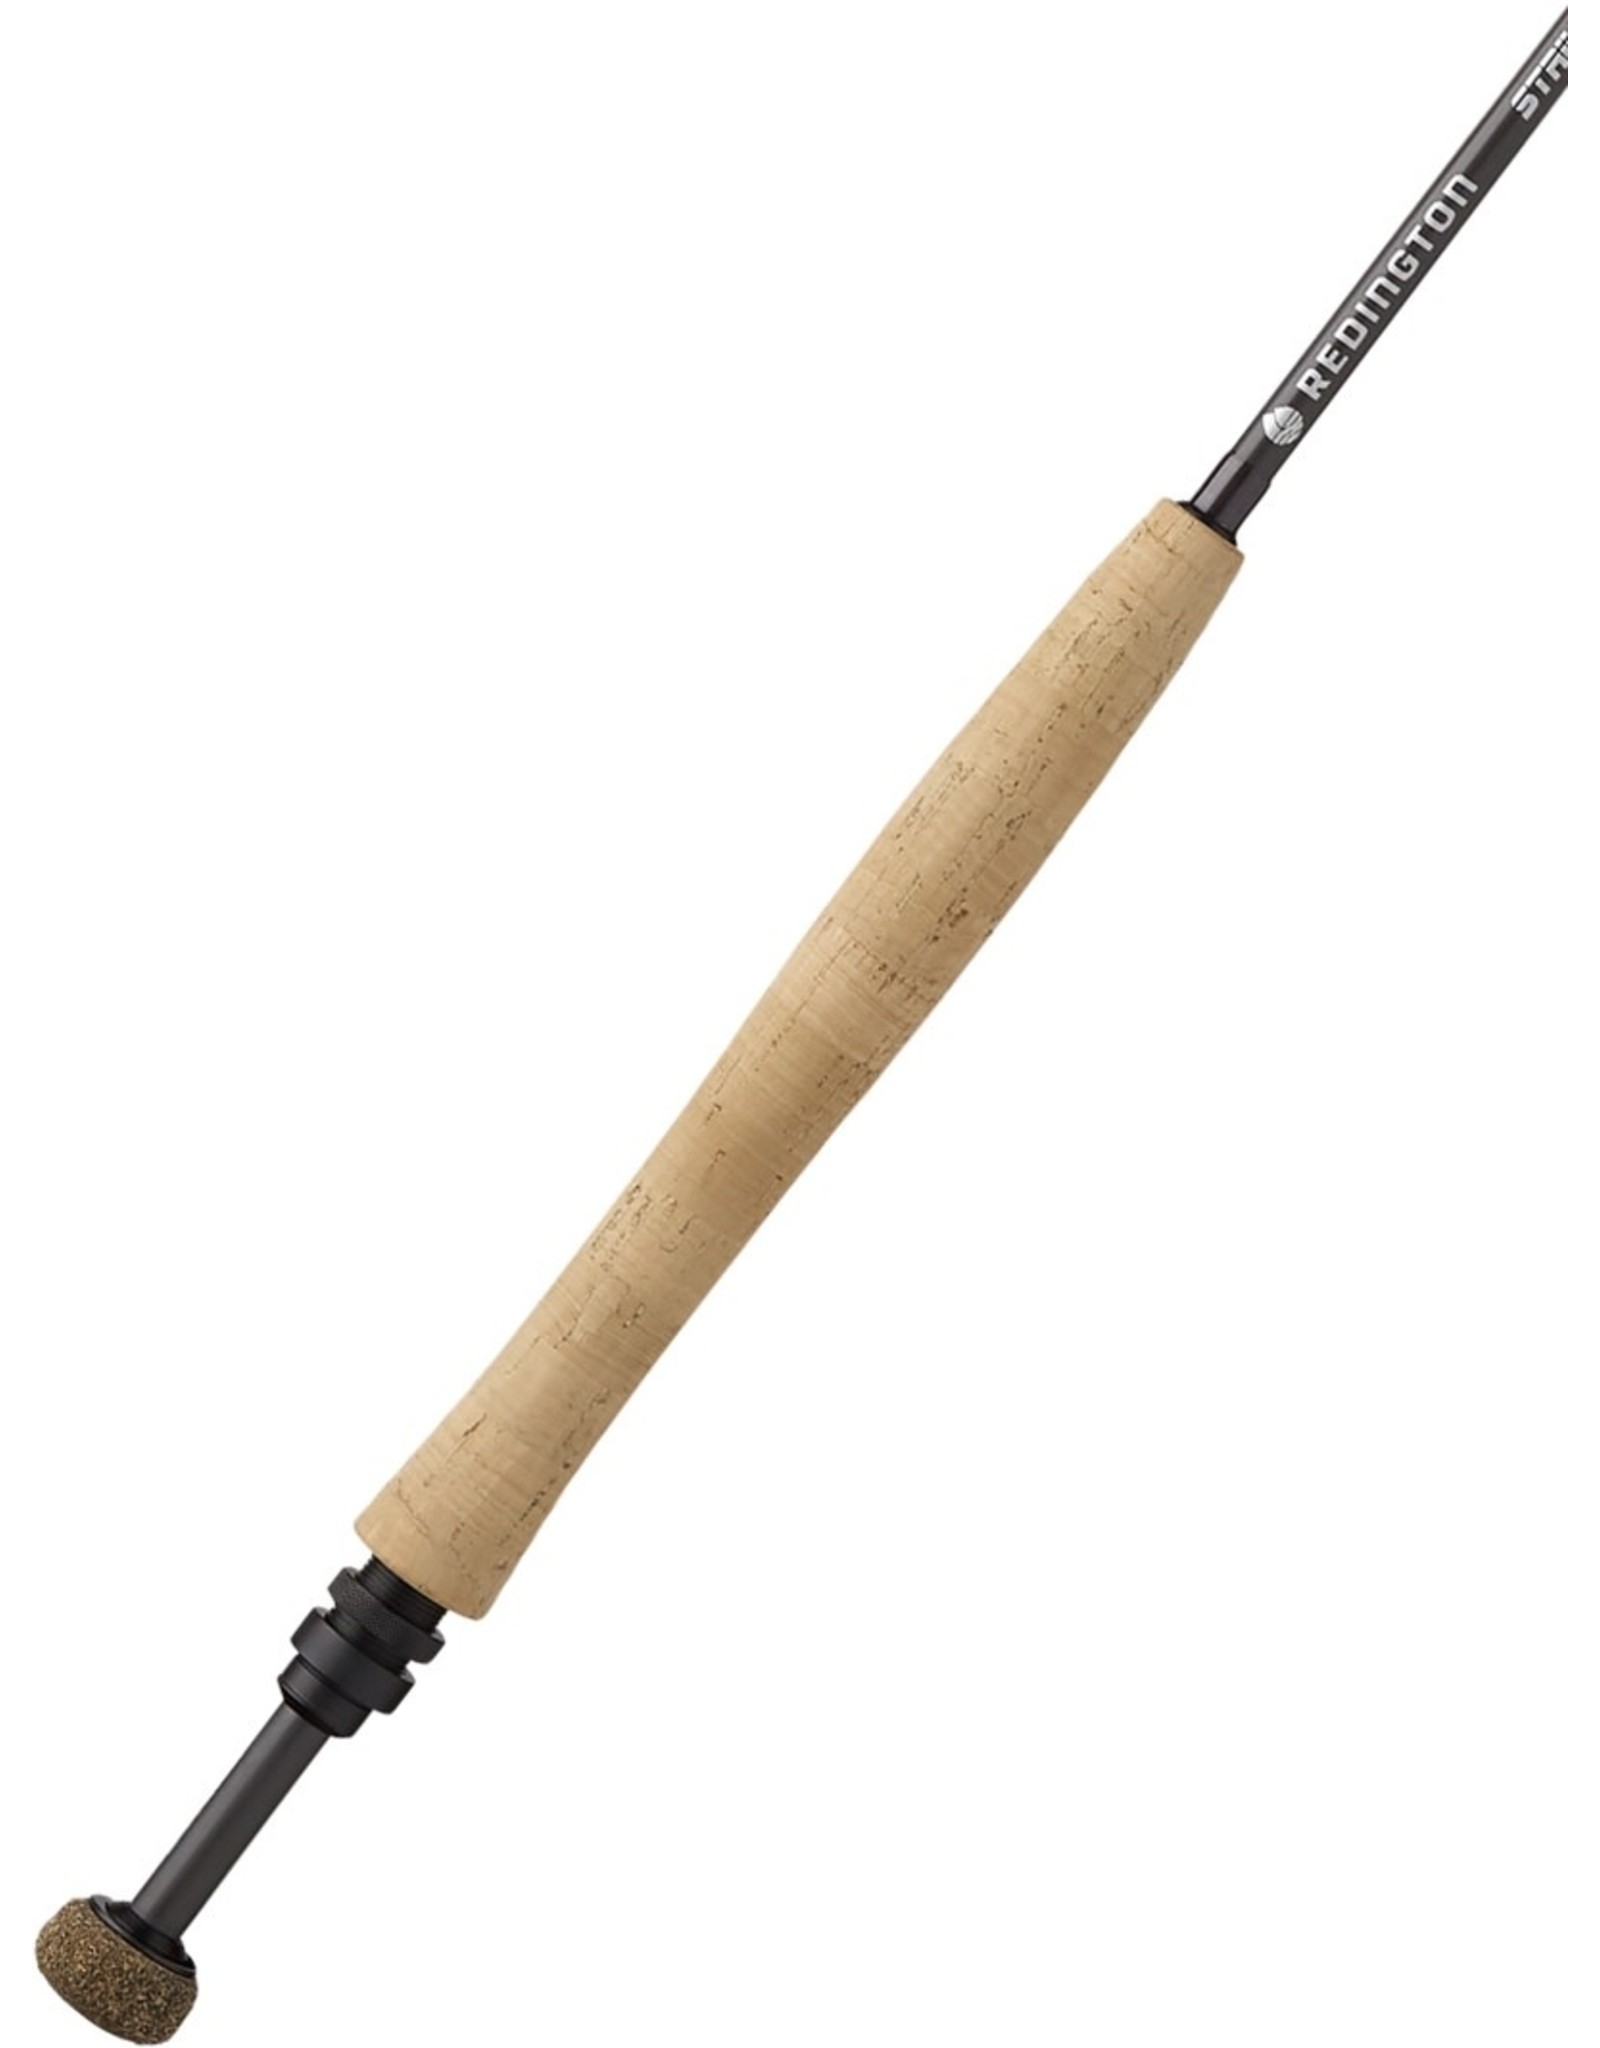 Redington Redington Strike 10'6" 3wt Euro Nymphing Rod (4pc)